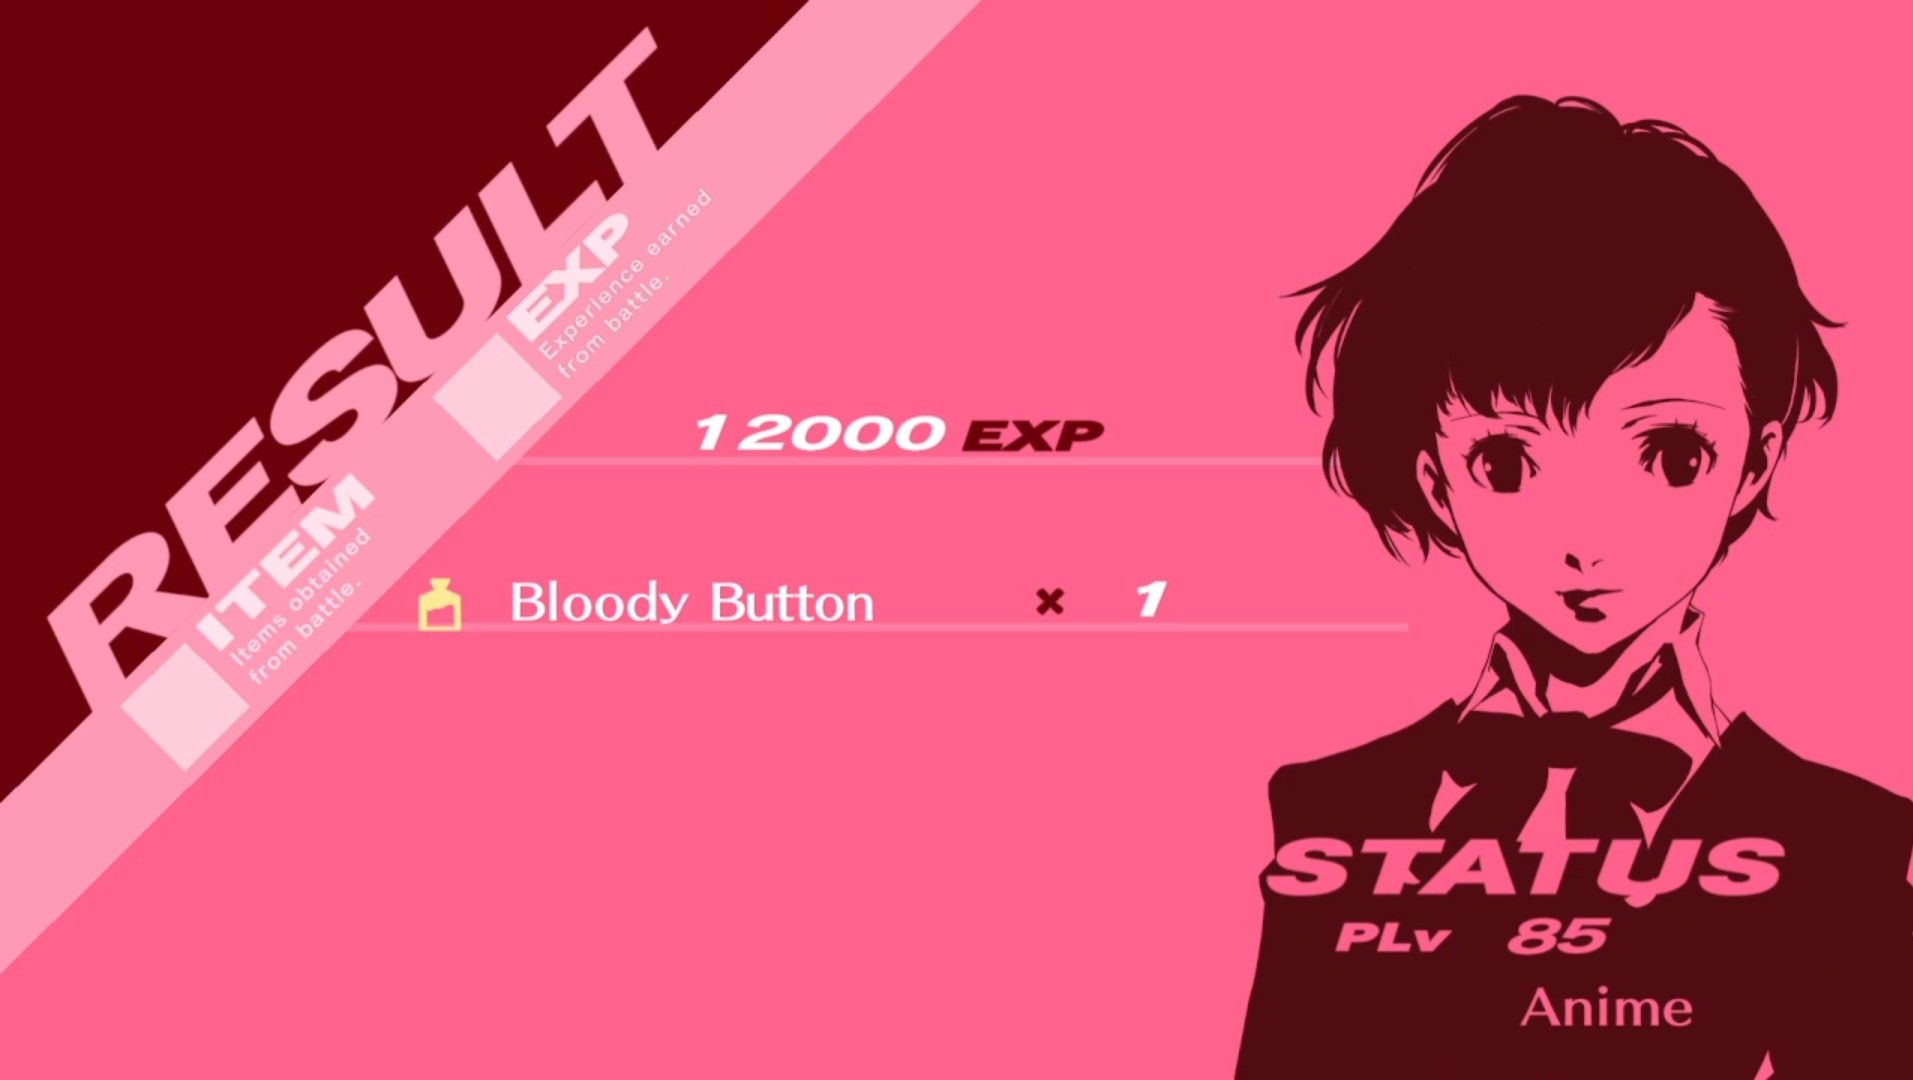 выиграть кровавую кнопку за главную героиню в Persona 3 Portable